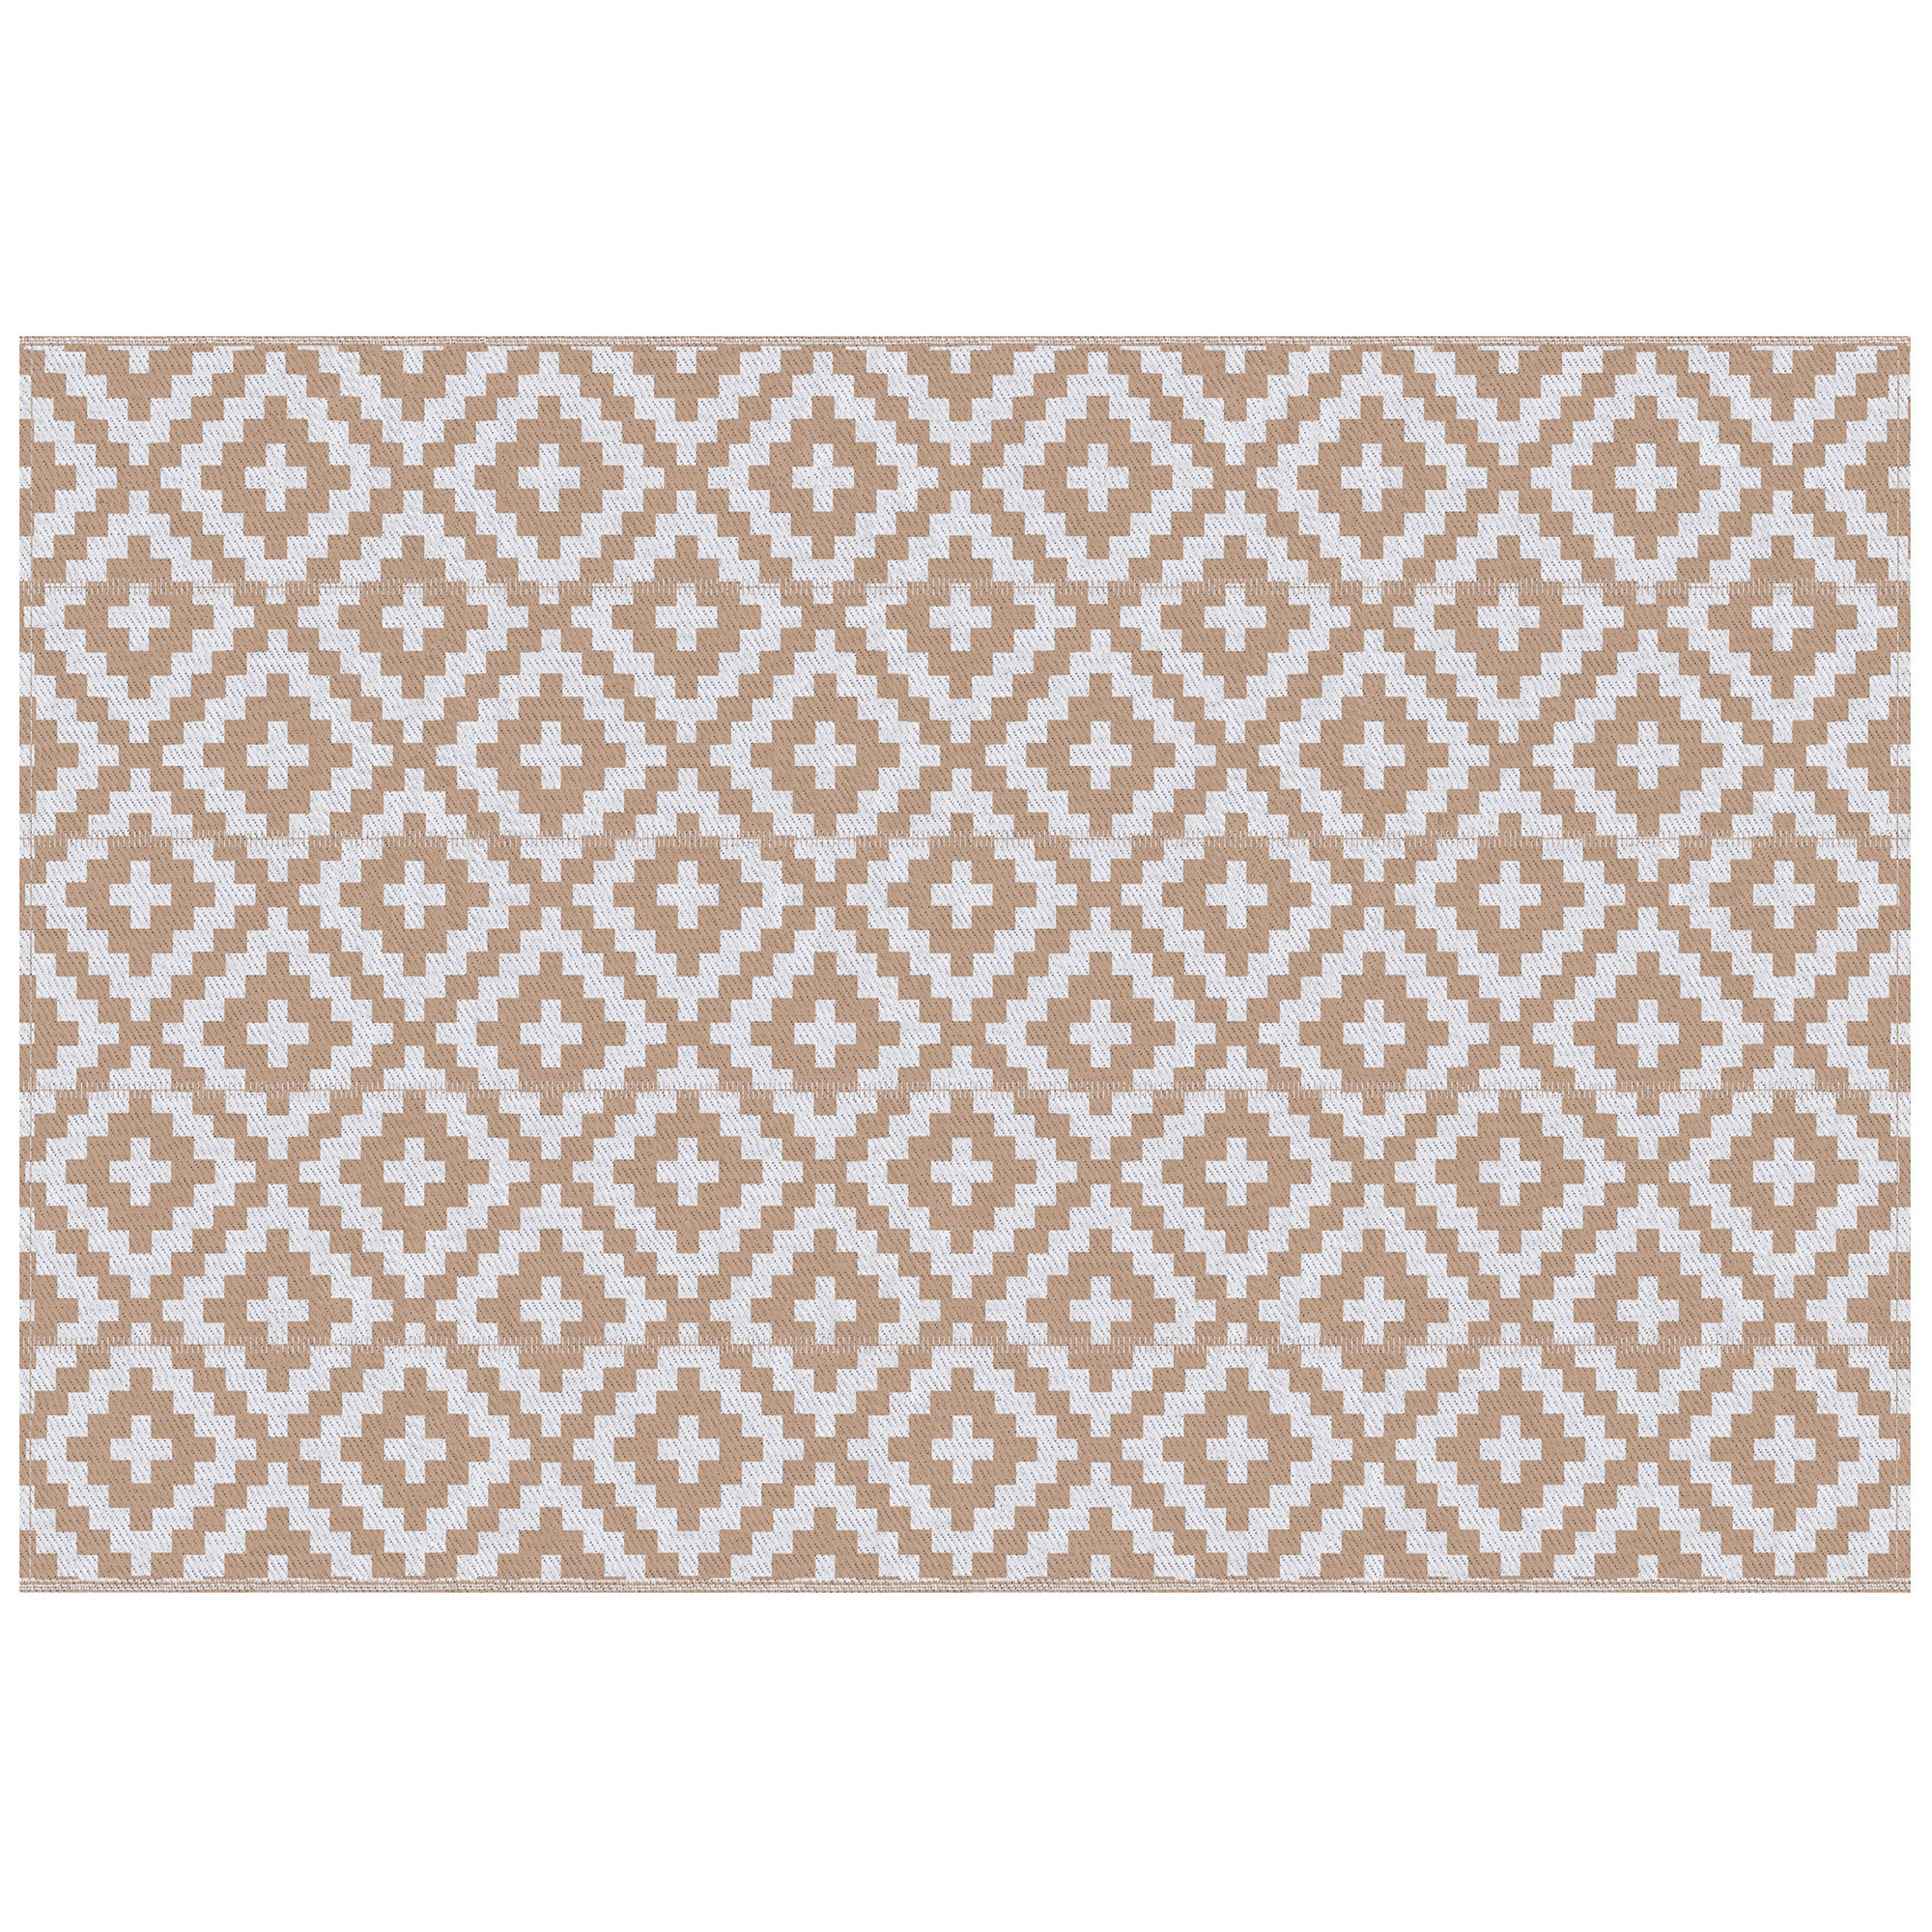 Tapis extérieur style graphique réversible 2 motifs blanc beige